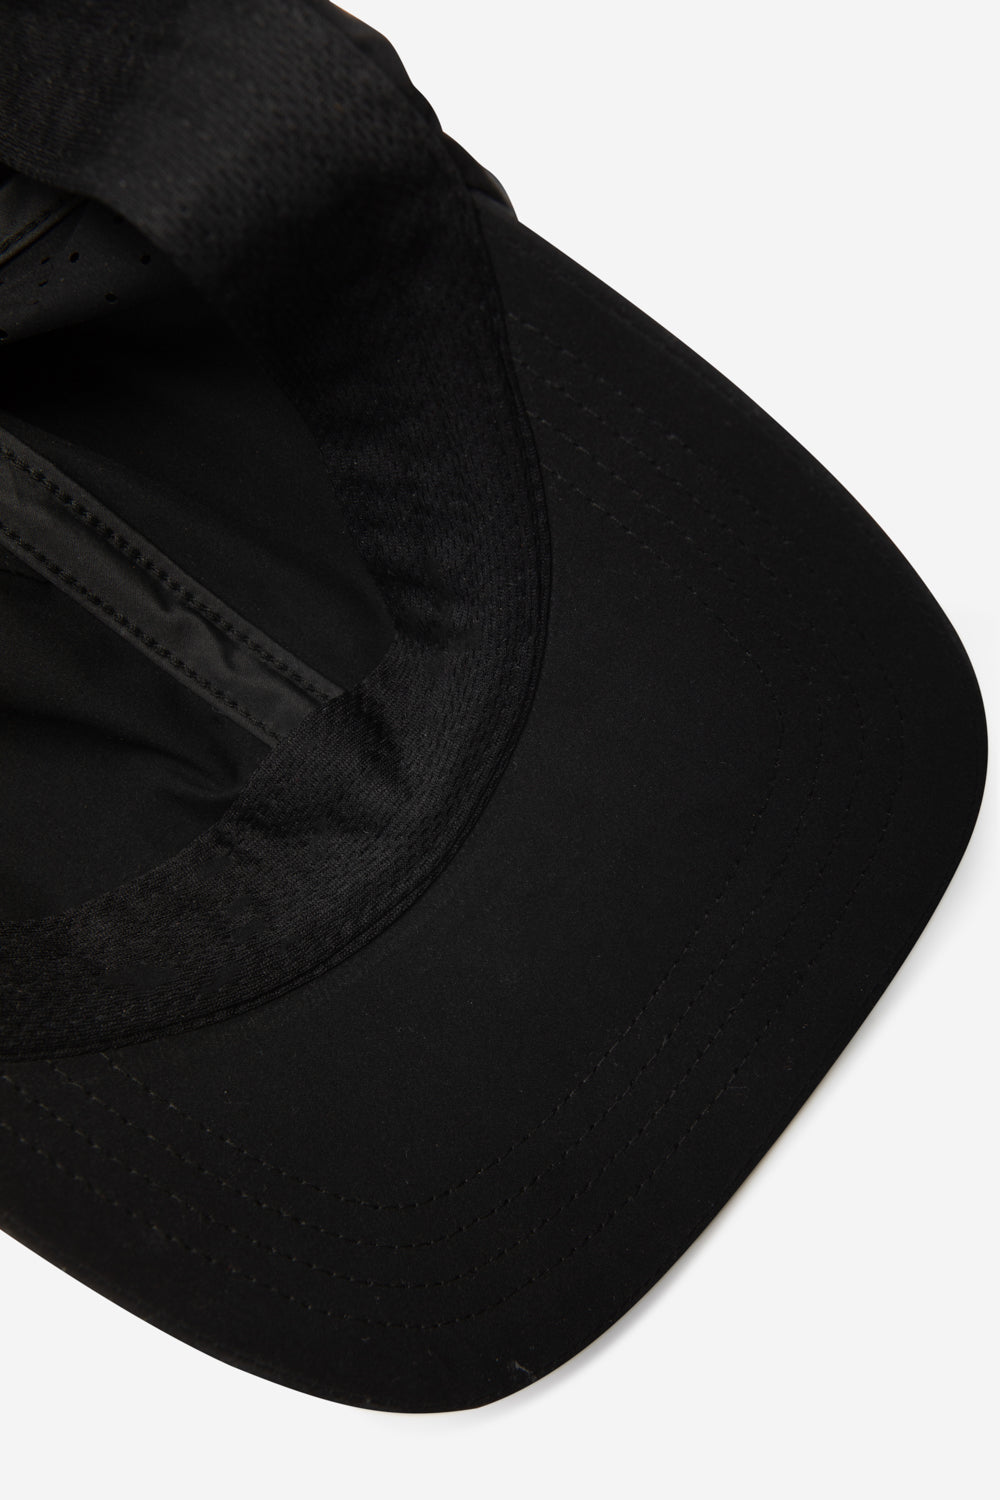 TOKIO UNISEX CAP BLACK